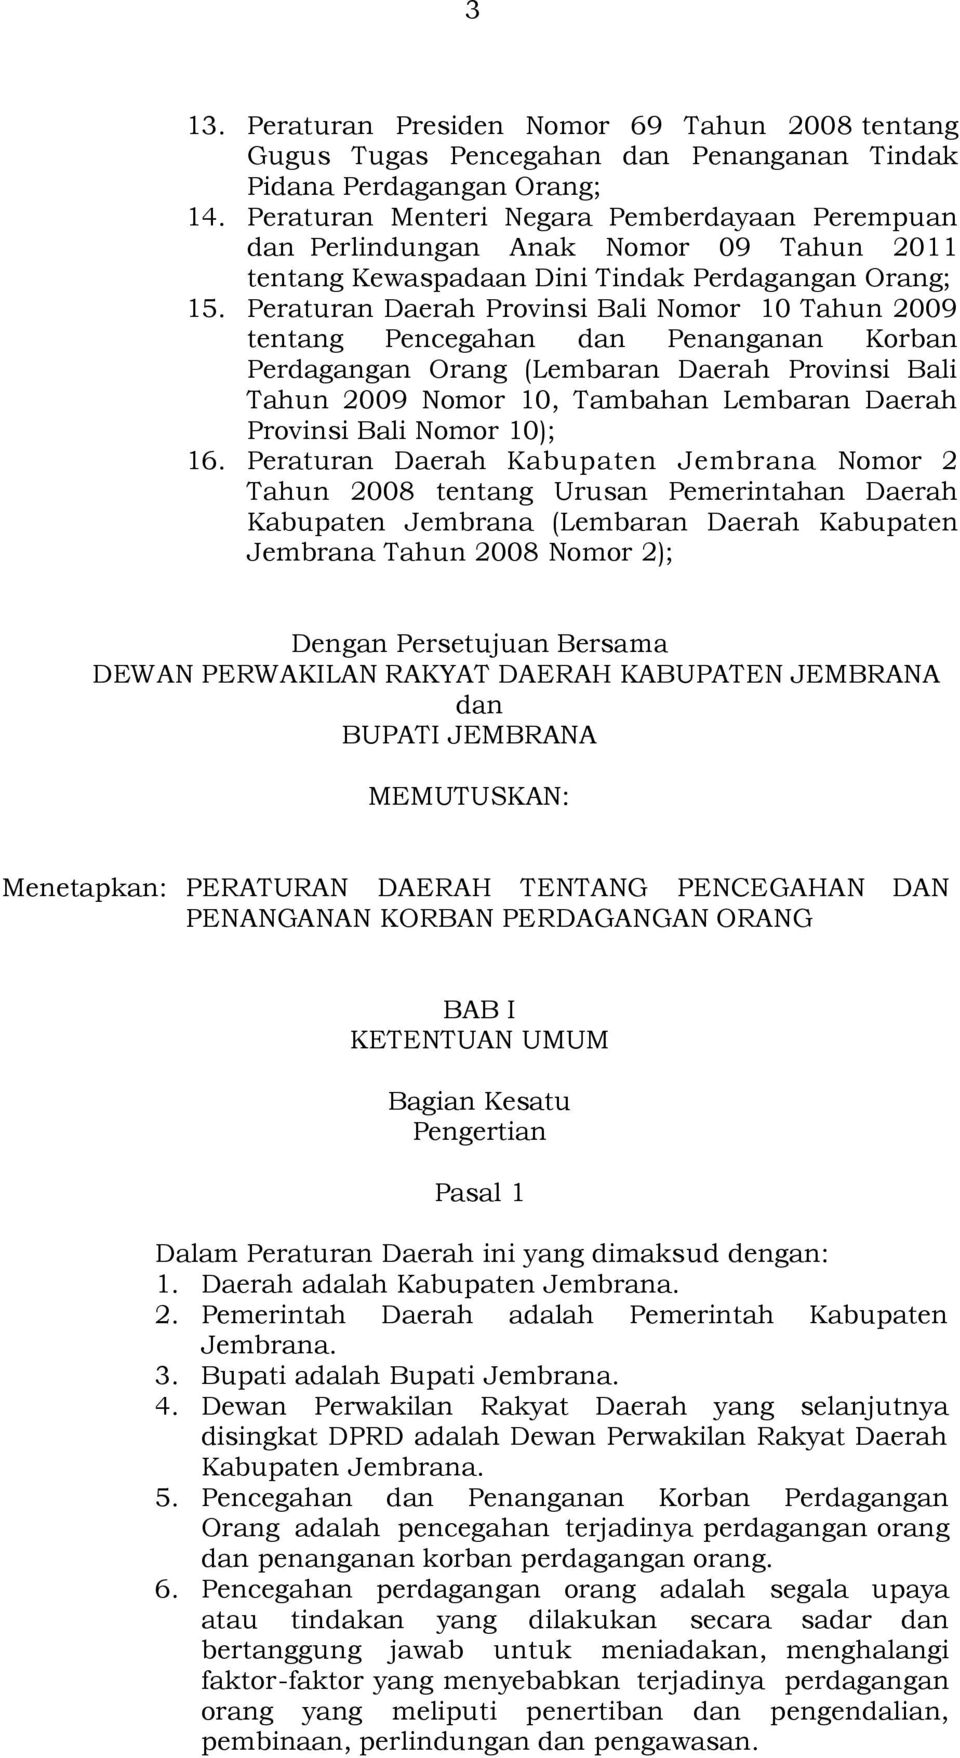 Peraturan Daerah Provinsi Bali Nomor 10 Tahun 2009 tentang Pencegahan dan Penanganan Korban Perdagangan Orang (Lembaran Daerah Provinsi Bali Tahun 2009 Nomor 10, Tambahan Lembaran Daerah Provinsi